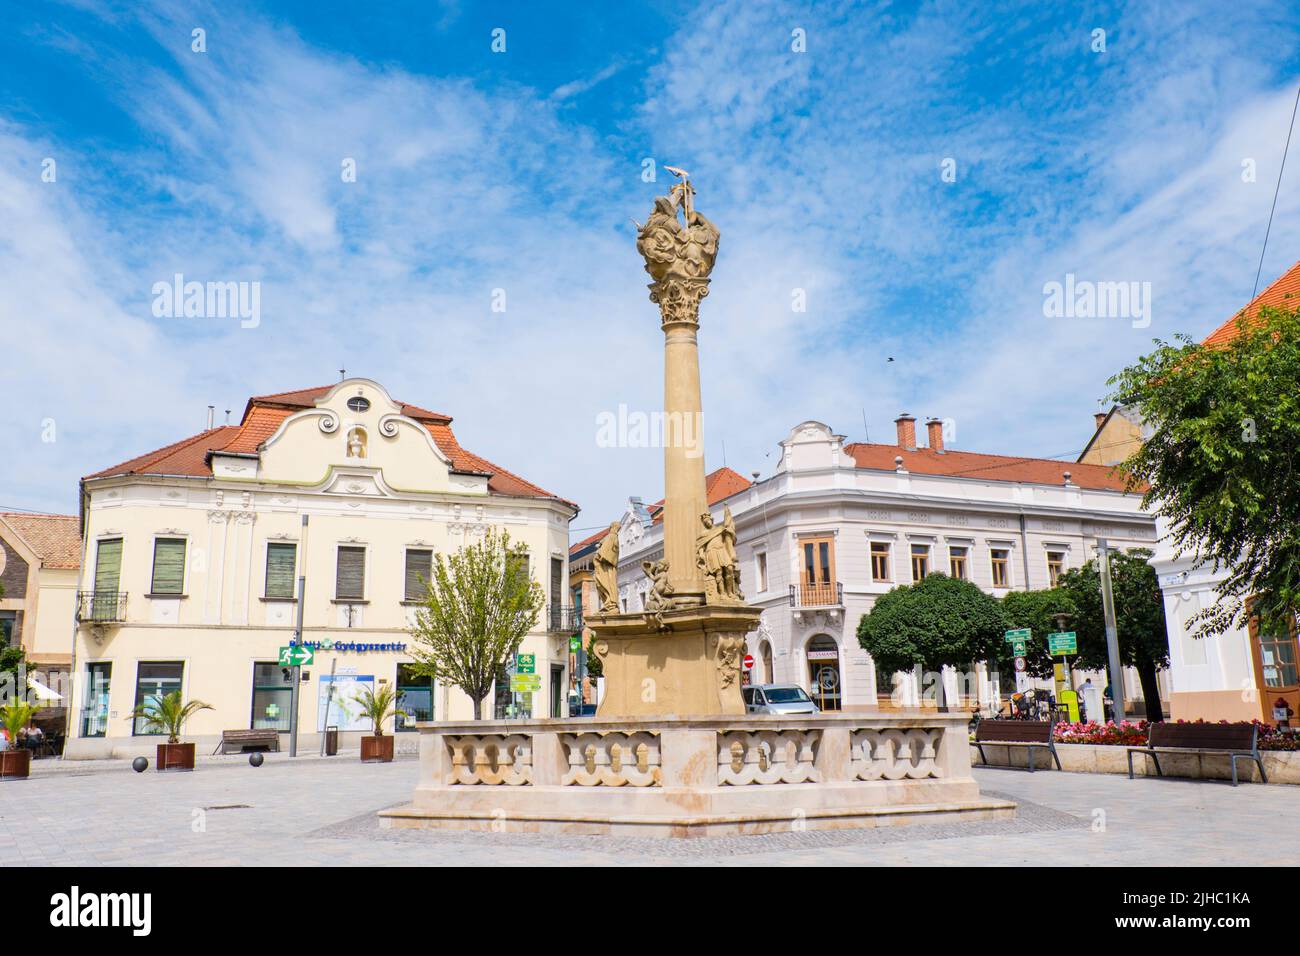 Fö ter, main square, Keszthely, Hungary Stock Photo